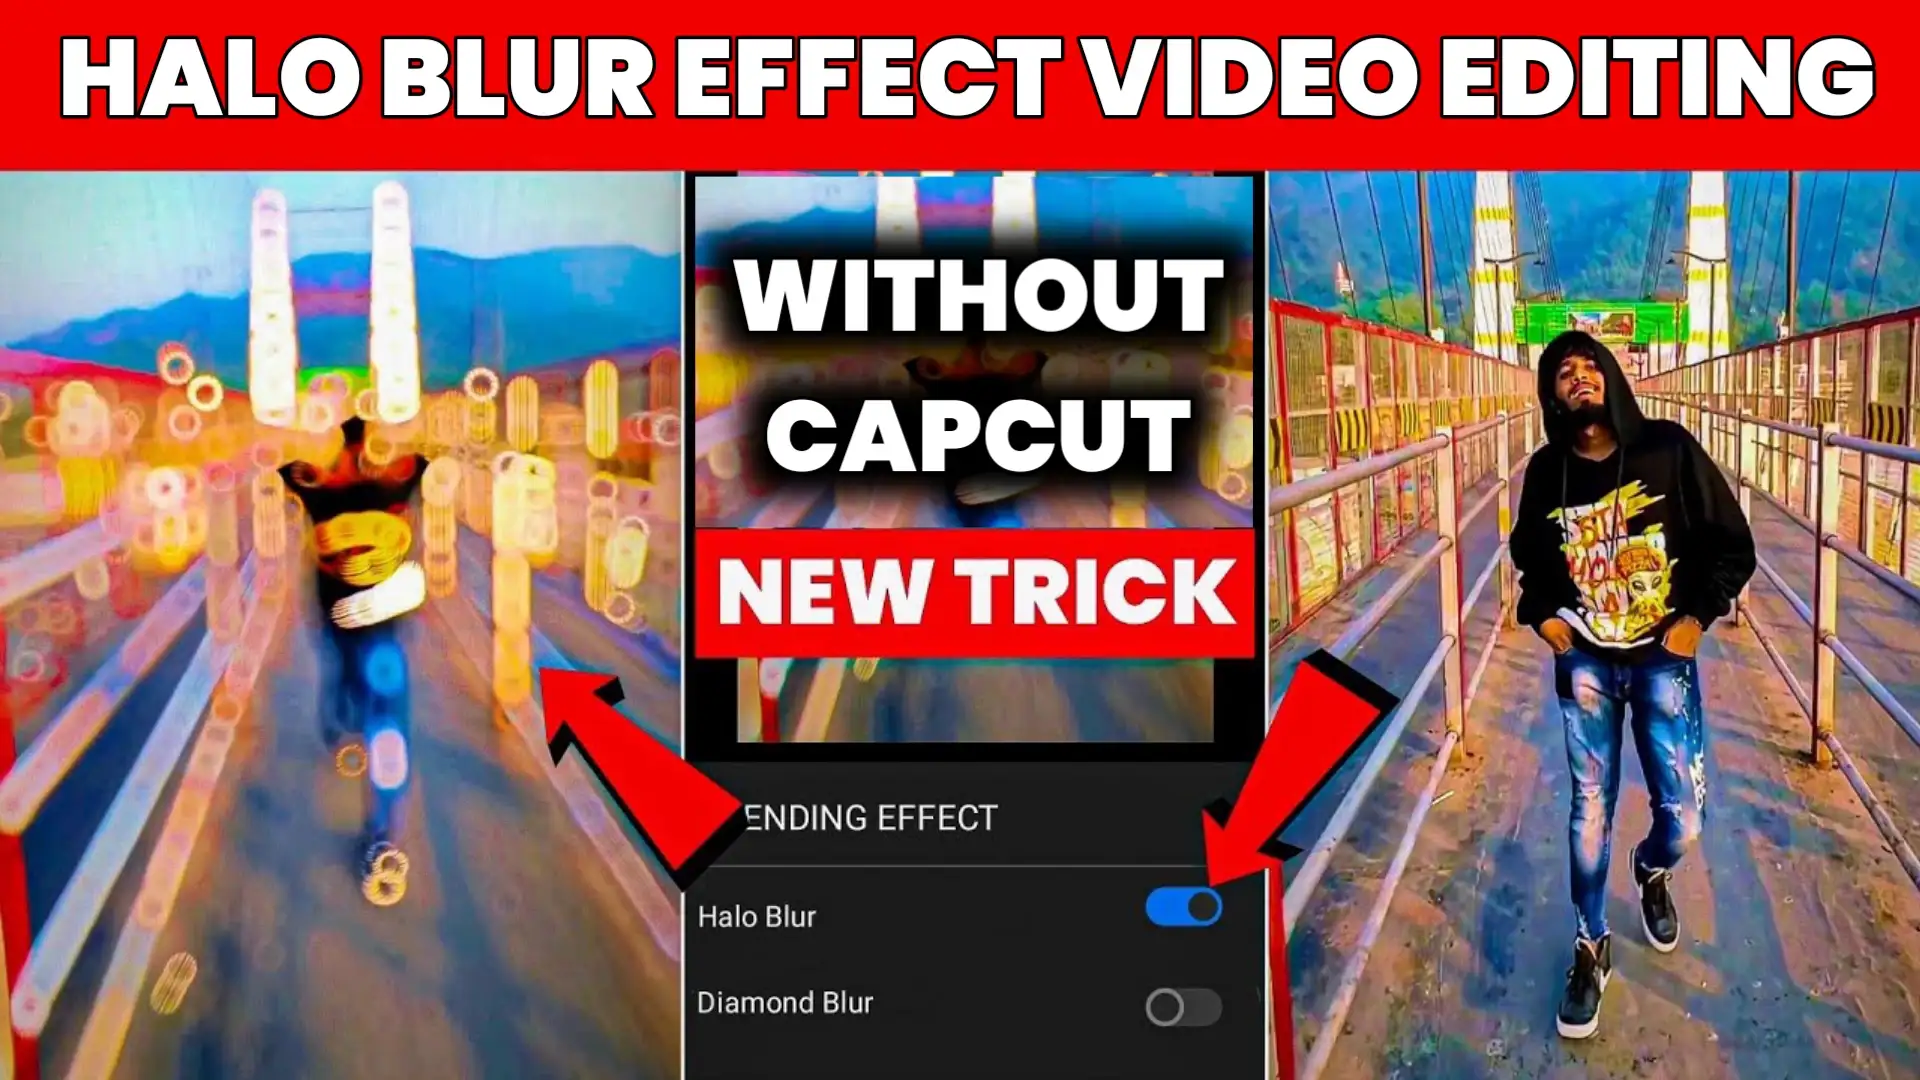 Halo Blur là một trong những hiệu ứng được yêu thích nhất trên CapCut. Với hiệu ứng này, bạn có thể tạo ra những đường chạy màu rực rỡ và giúp video của bạn trở nên sống động hơn bao giờ hết. Bạn không biết cách áp dụng hiệu ứng Halo Blur? Hãy cùng xem video và học cách làm nhé!